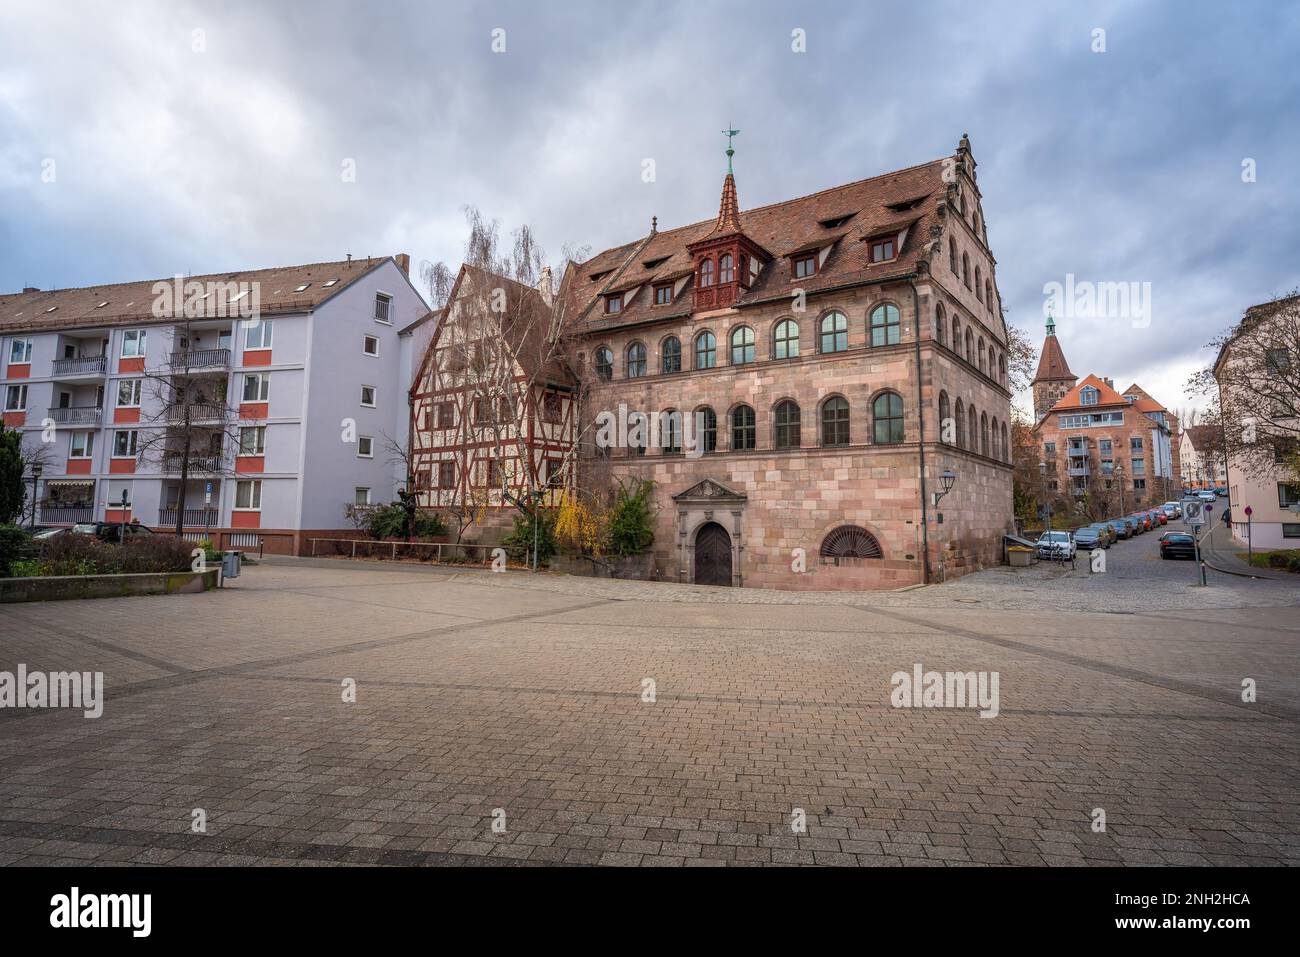 Herrenschiesshaus - Historic shooting house - Nuremberg, Bavaria, Germany Stock Photo